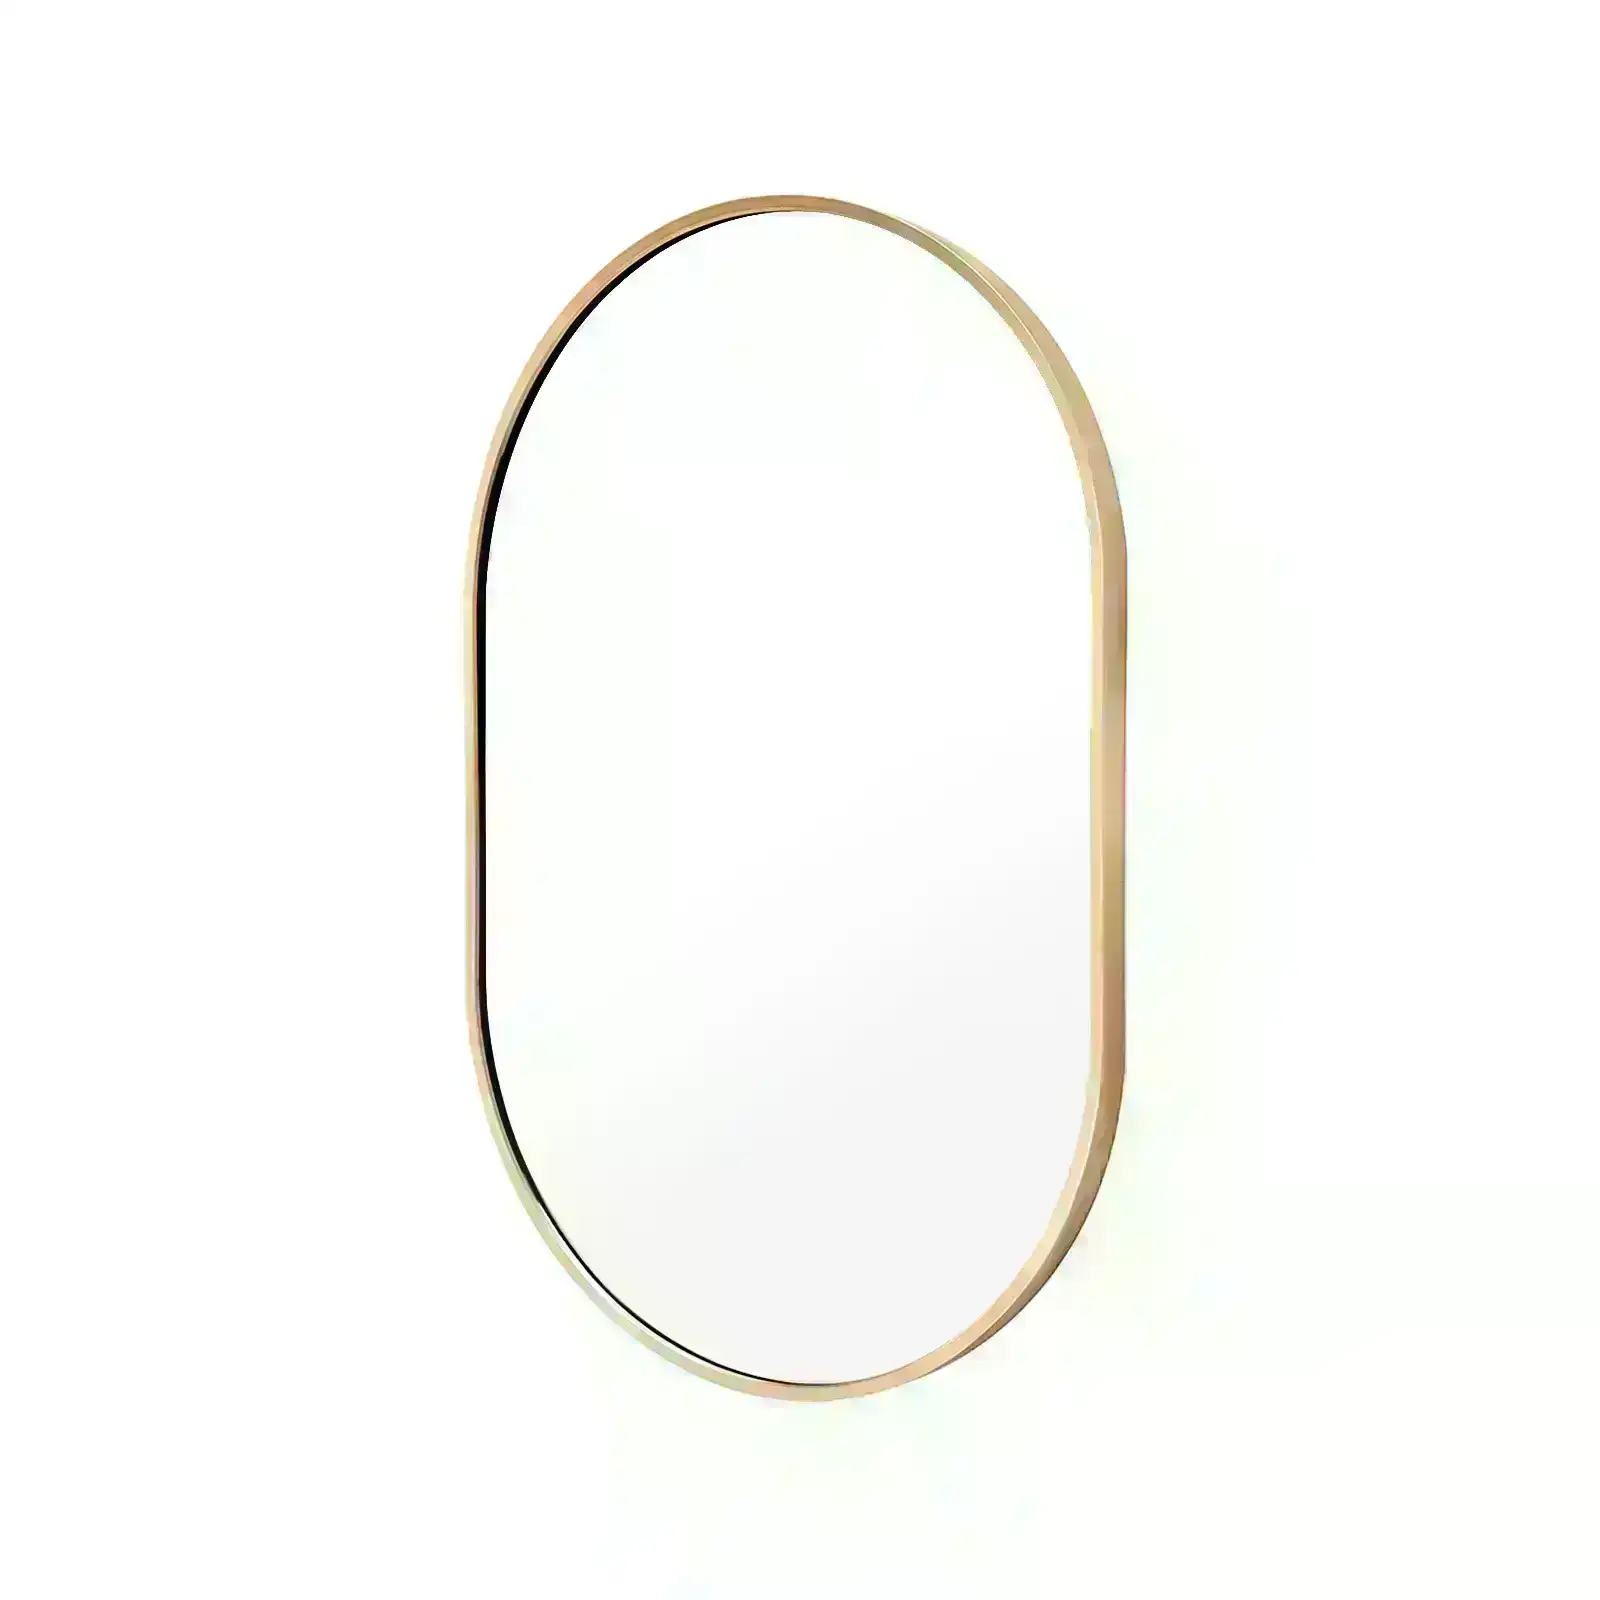 50 x 75cm Wall Mirror Oval Bathroom - GOLD